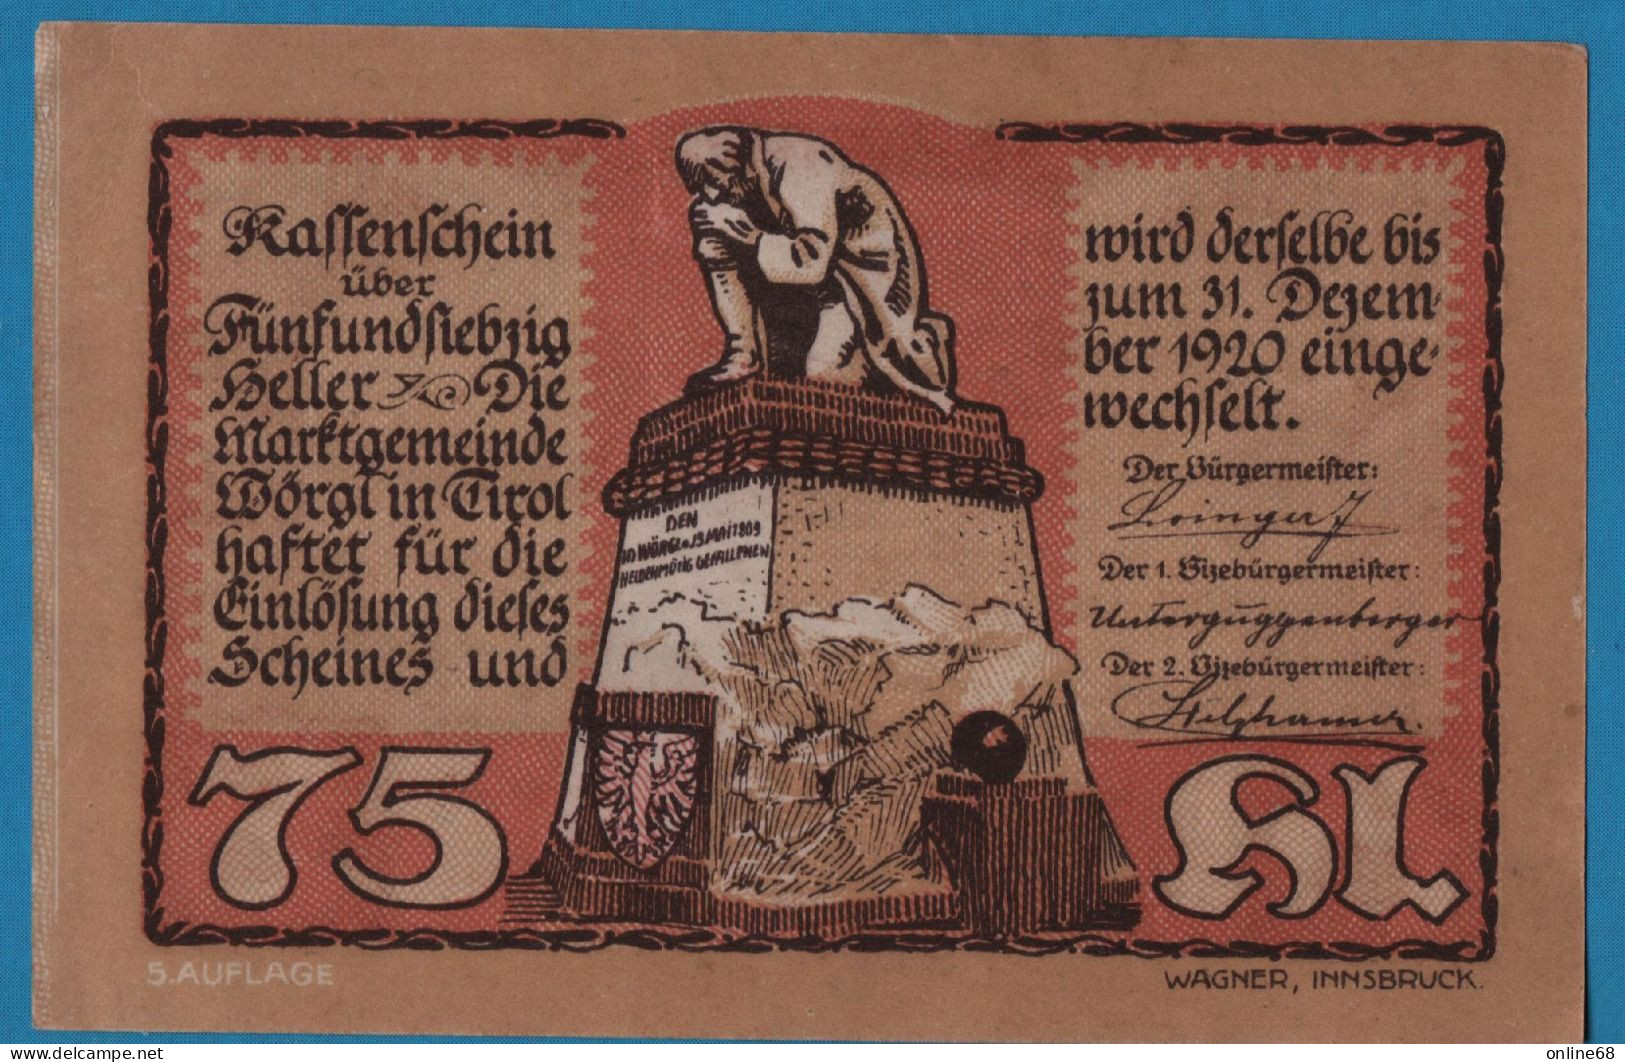 AUSTRIA Wörgl Tirol Marktgemeinde 75 HELLER No Date-31/12/1920 5. AUFLAGE NOTGELD Catalog # FS 1252 - Oesterreich